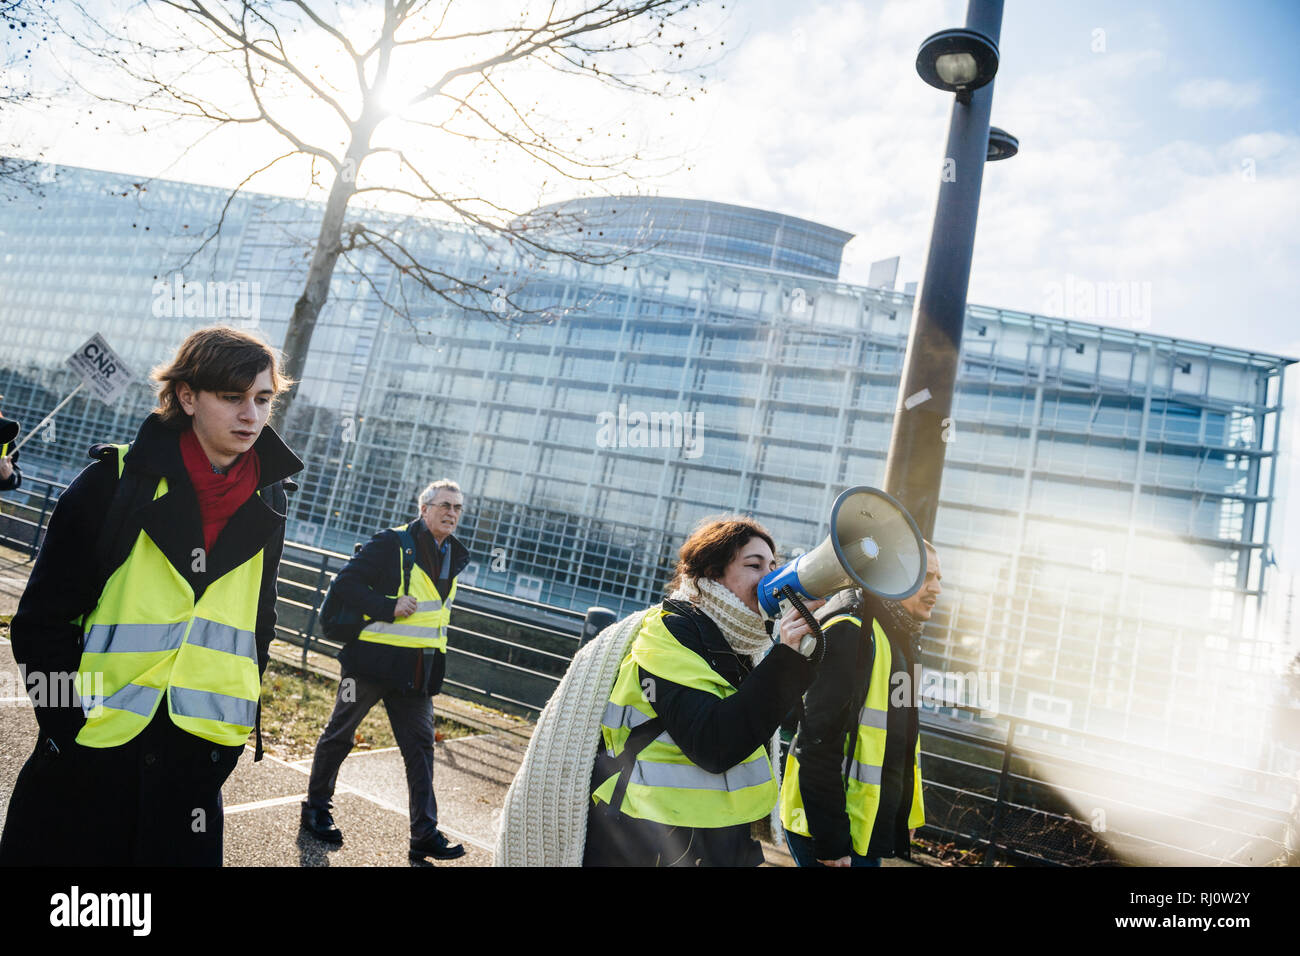 Strasburgo, Francia - Feb 02, 2018: donna urlare sul megafono altoparlante dimostrando marciando con cartelli durante la protesta di Gilets Jaunes Giubbotto giallo manifestazione Parlamento Europeo Foto Stock